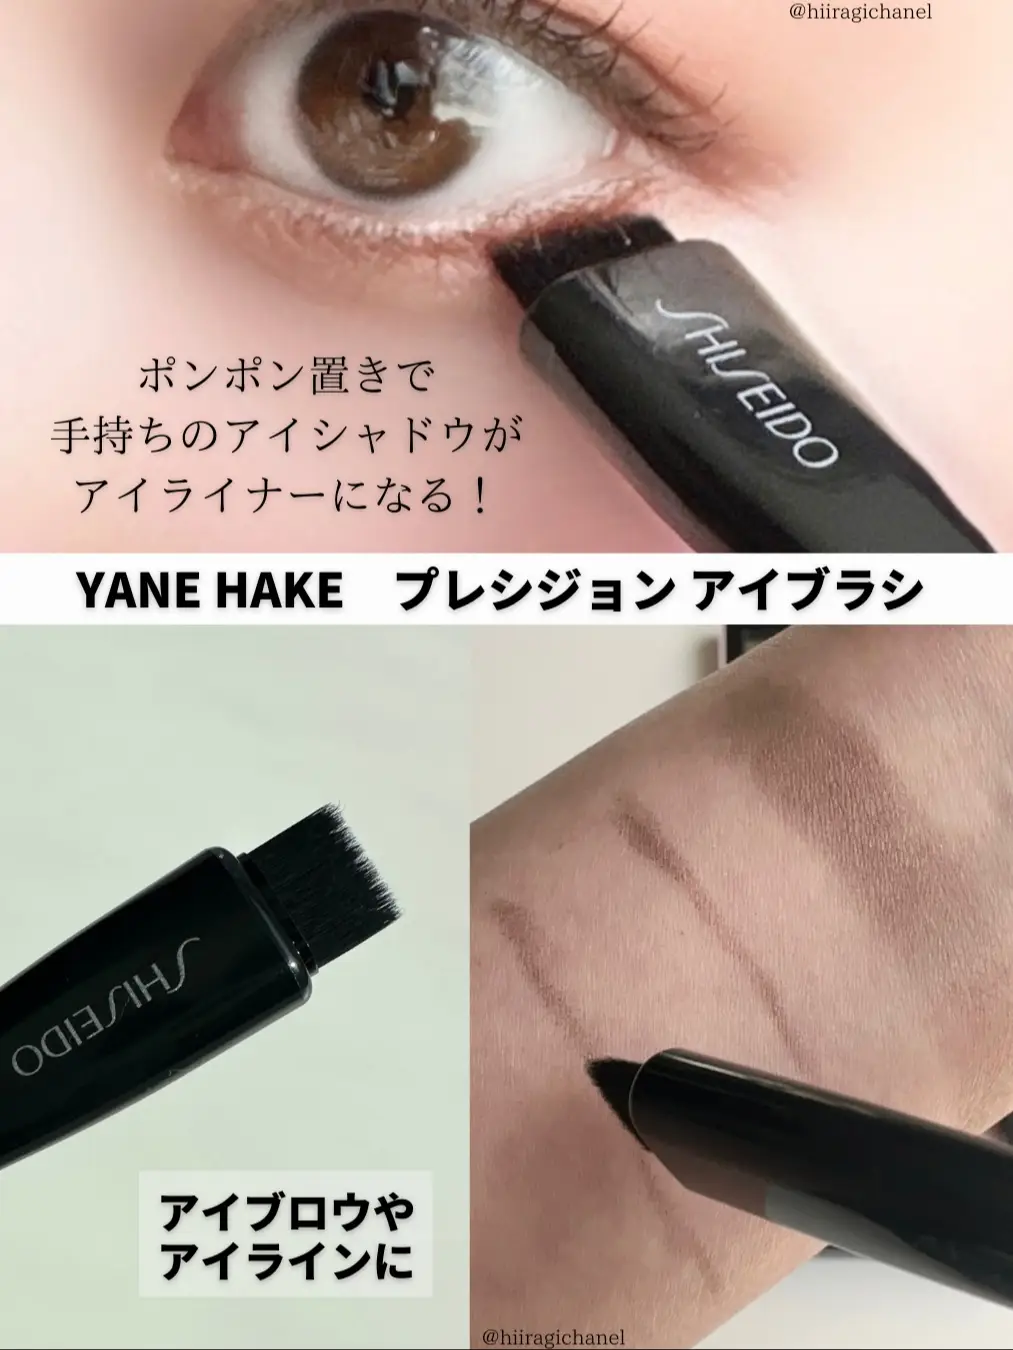 SHISEIDO YANE HAKE プレシジョン アイブラシ - メイク道具・化粧小物